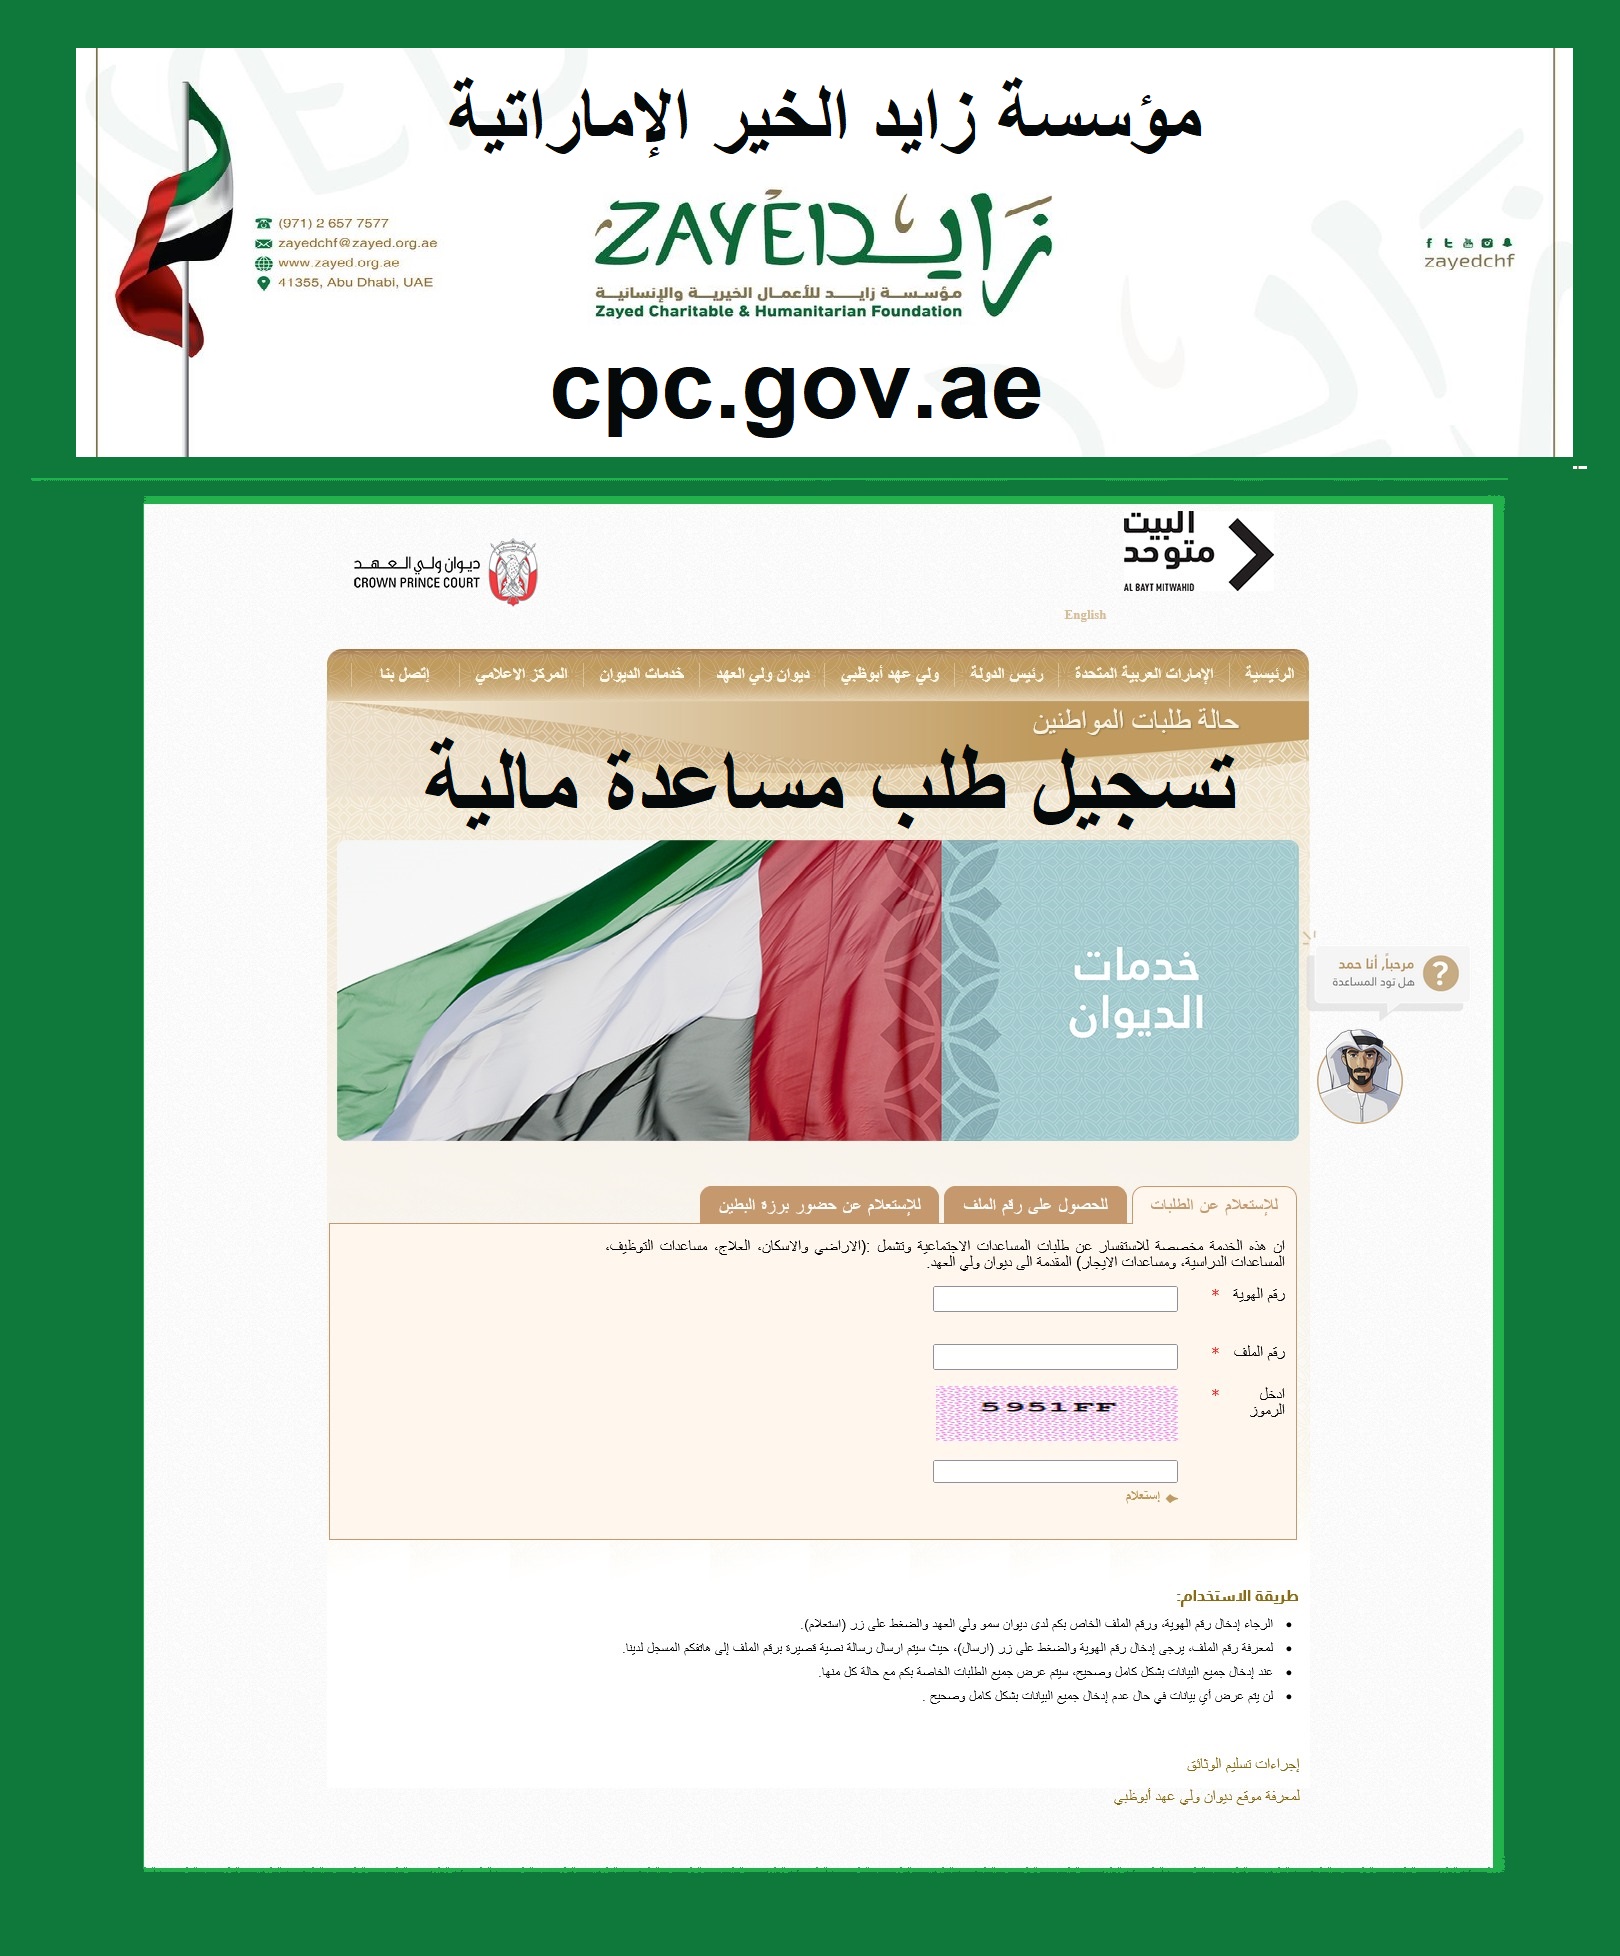 مؤسسة زايد الخير الإماراتية cpc.gov.ae تسجيل طلب مساعدة مالية رقم هواتف "أشهر الجمعيات الخيرية"